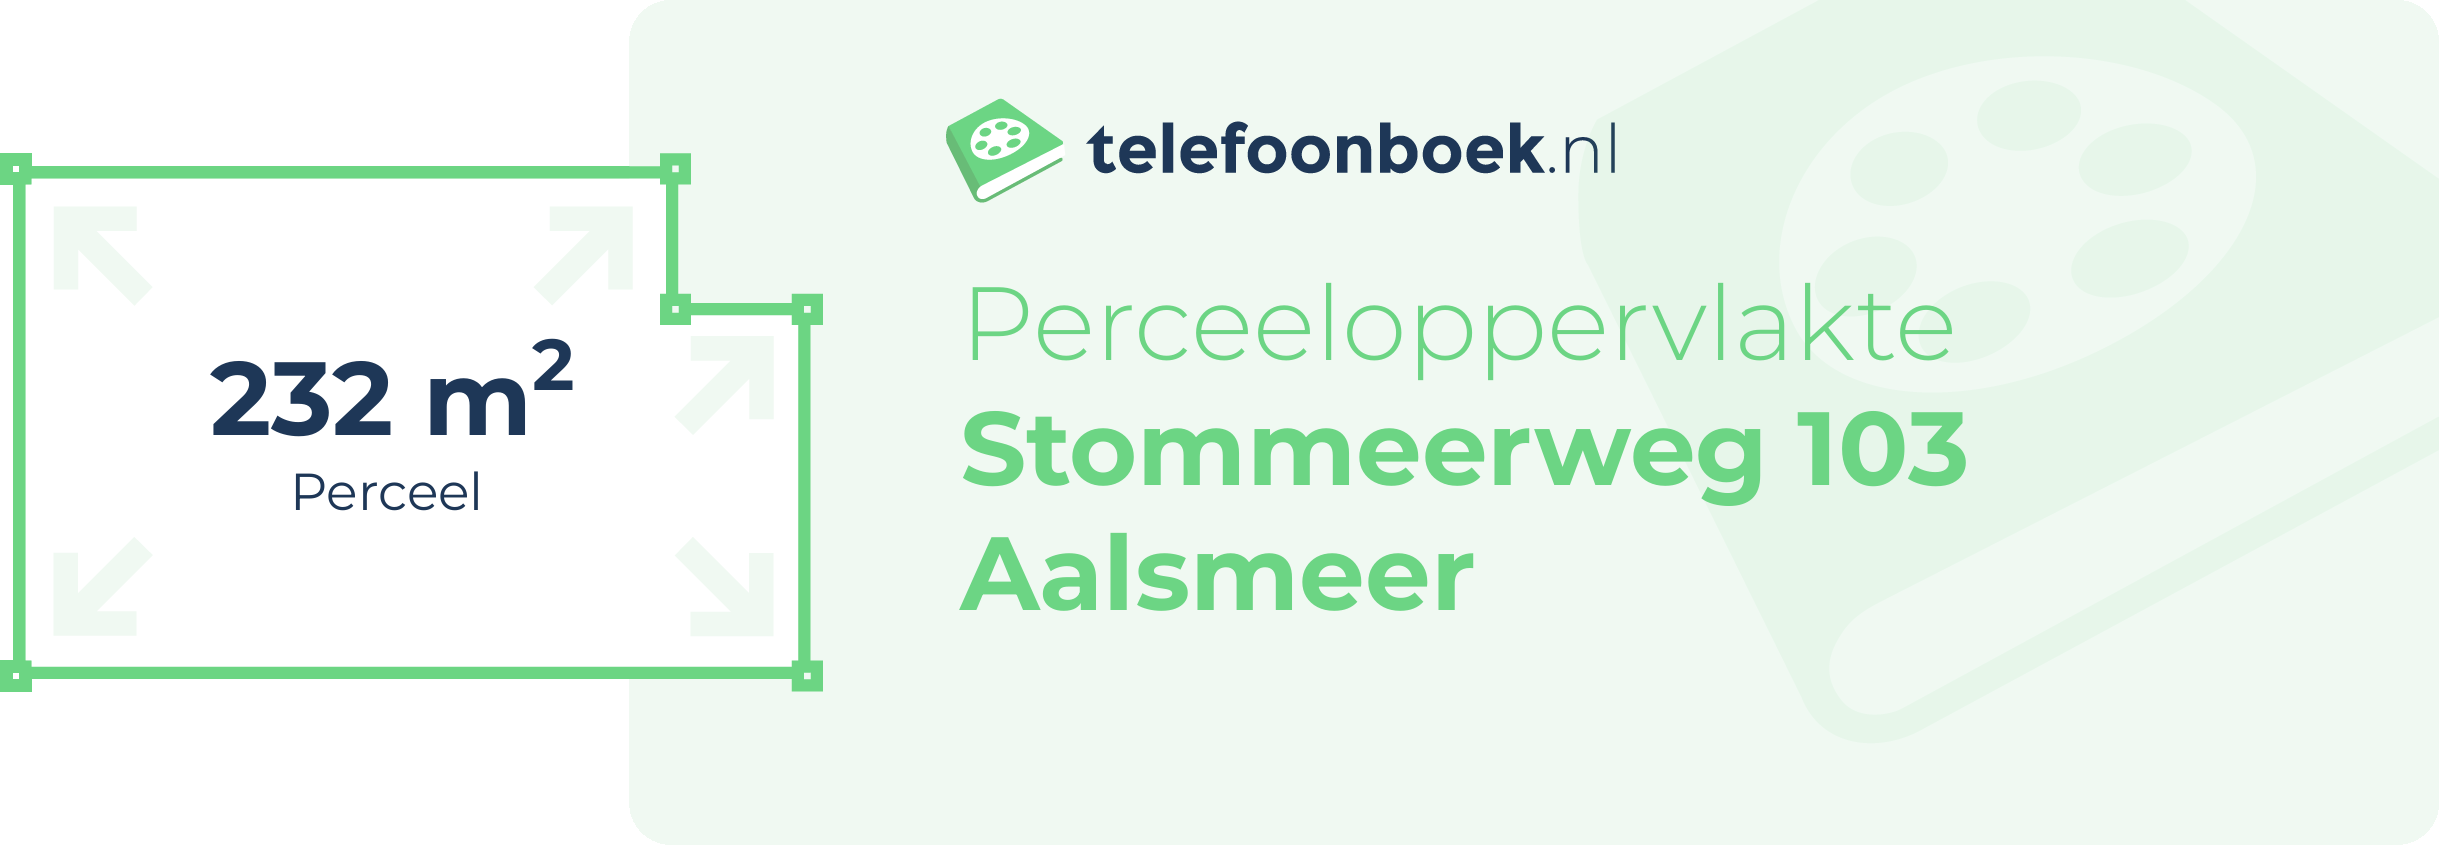 Perceeloppervlakte Stommeerweg 103 Aalsmeer